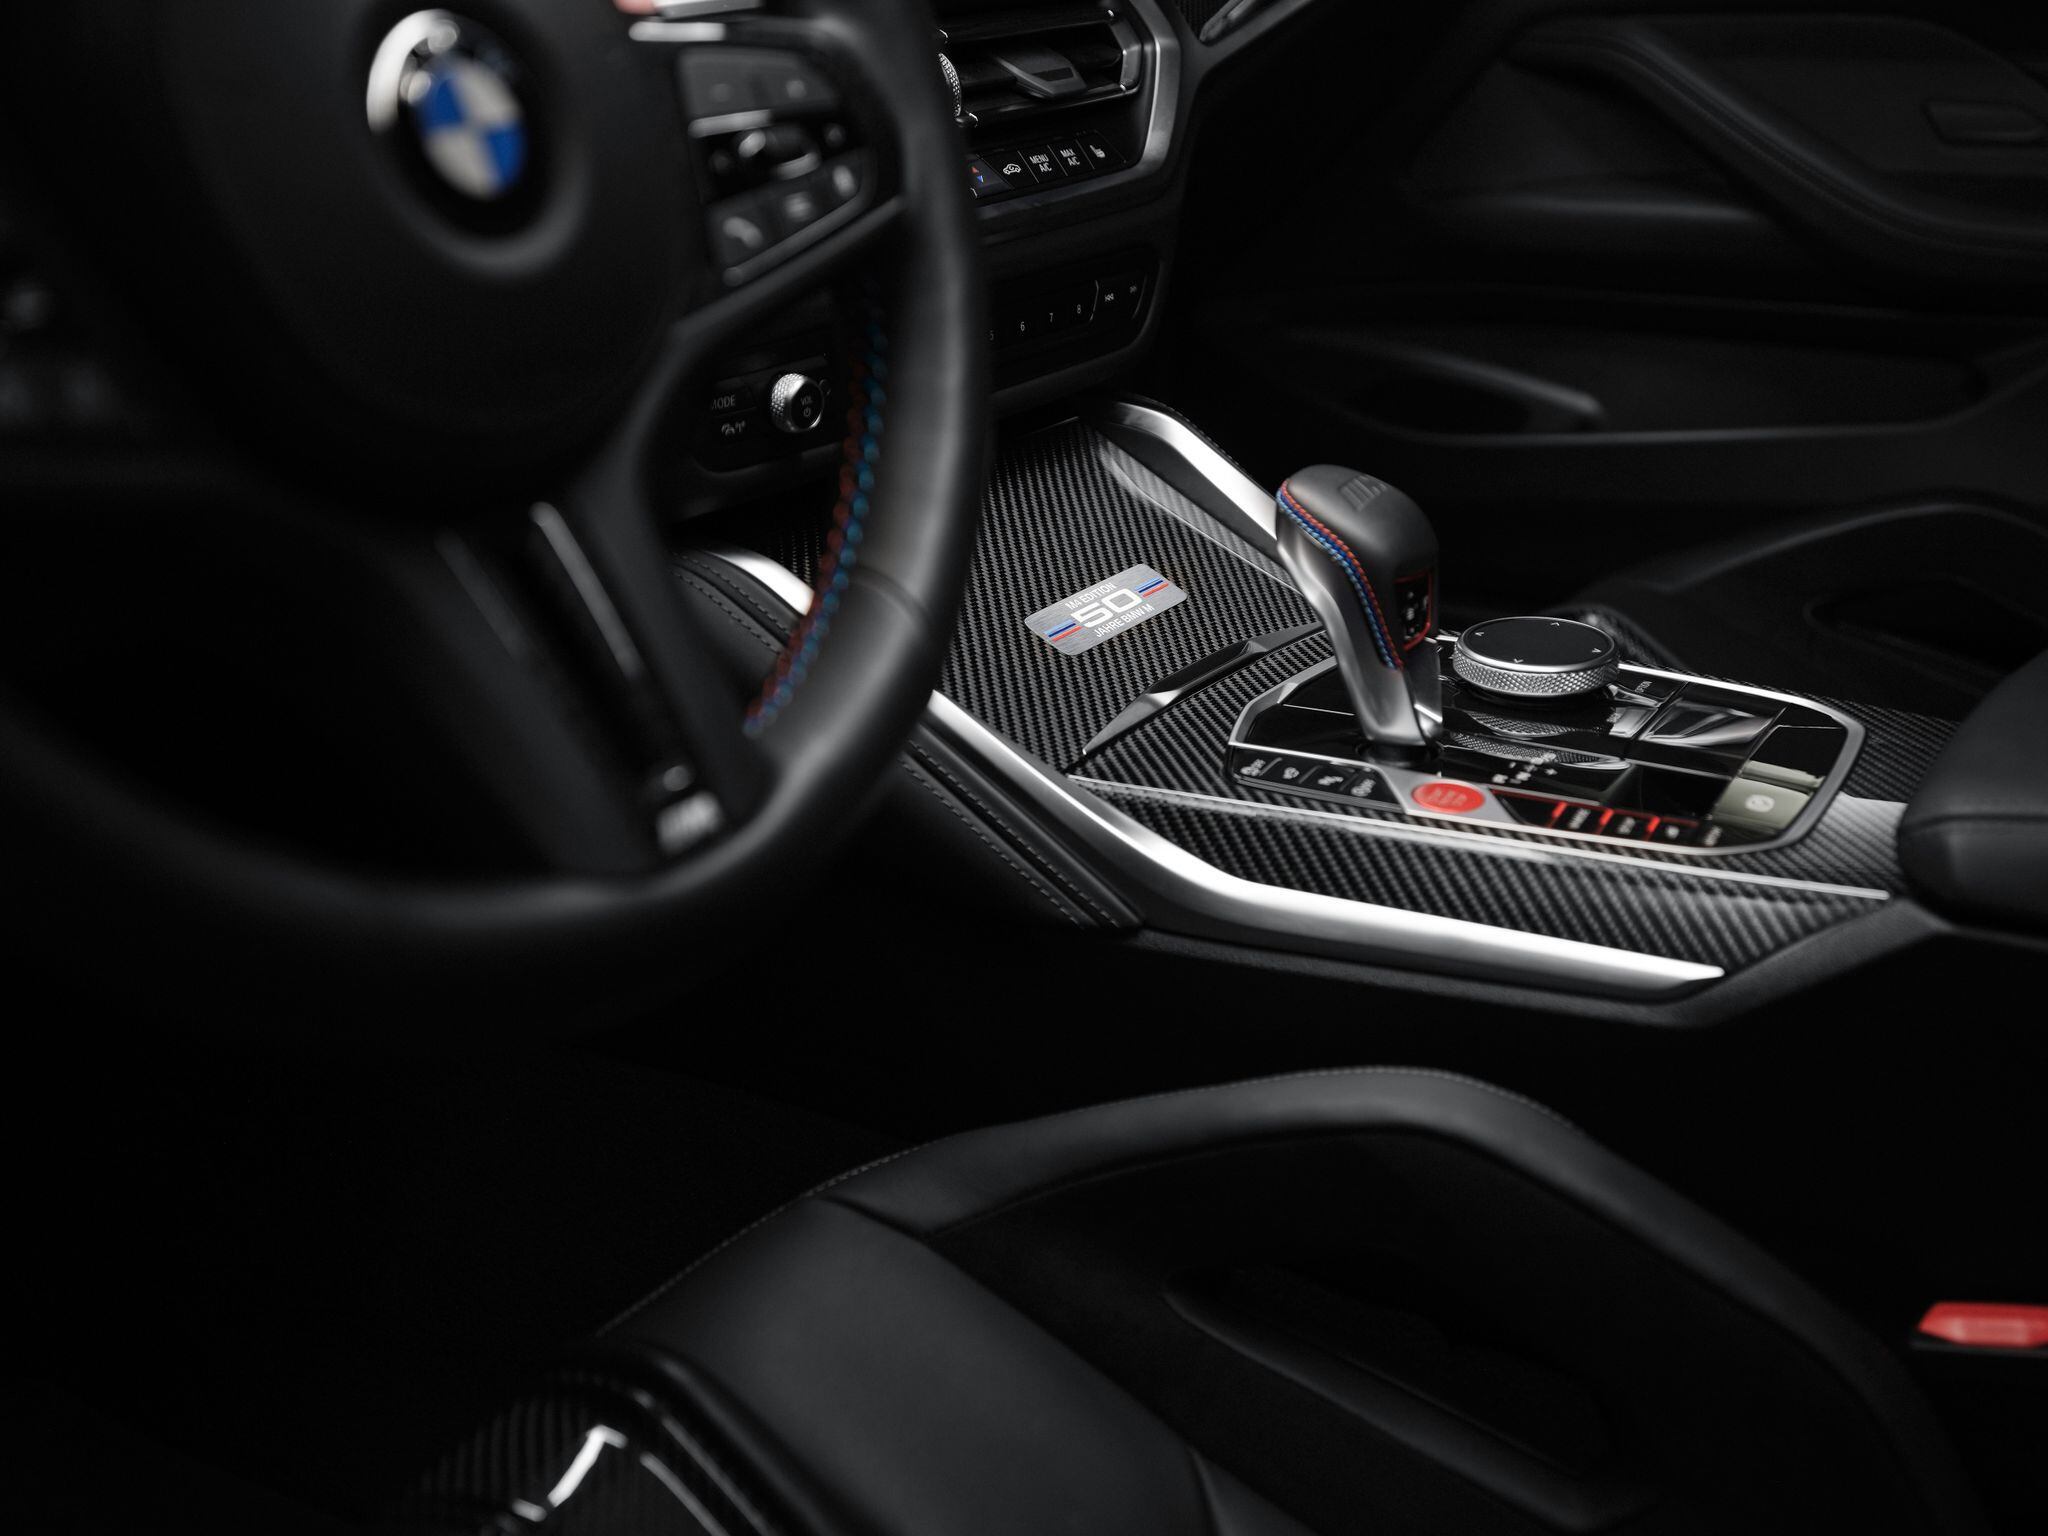 Los autos de transmisión automática representan mayor comodidad al manejar, pues el conductor ya no se tiene que preocupar por realizar los cambios. (BMW AG/dpa)